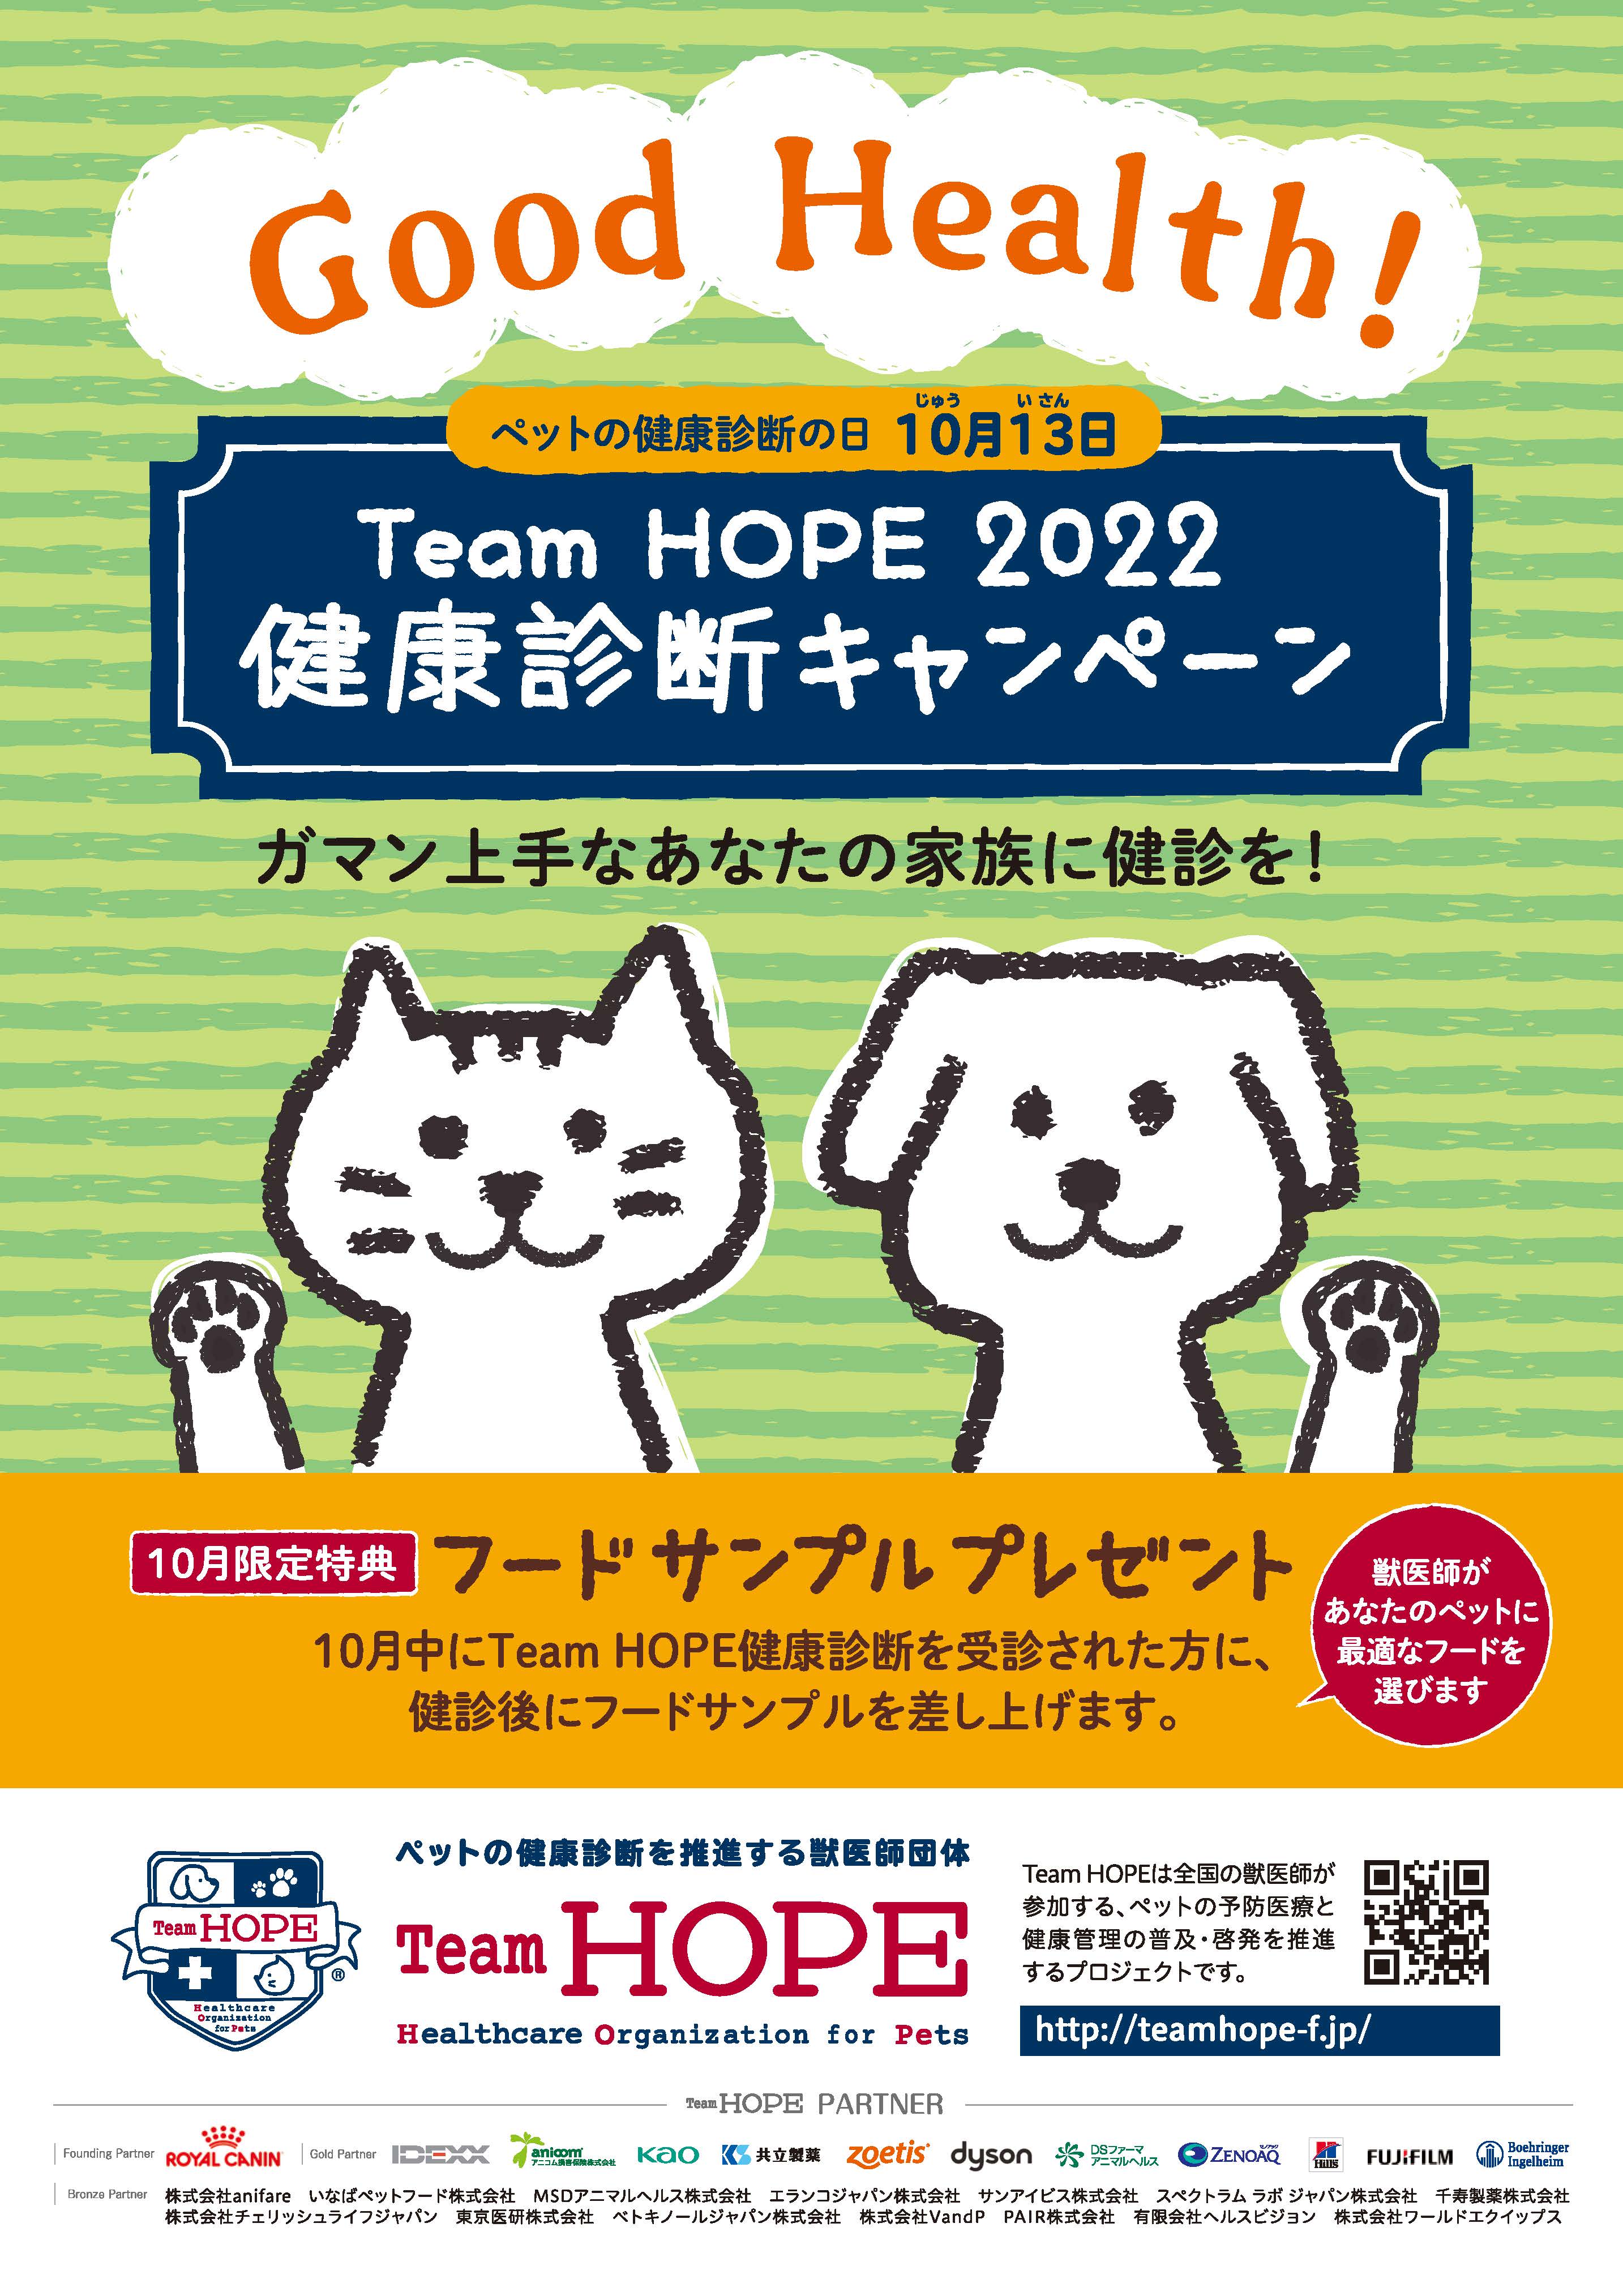 10月13日 じゅういさん は ペットの健康診断の日 Team Hope賛同病院で 健康診断キャンペーン を実施します 一般社団法人team Hopeのプレスリリース